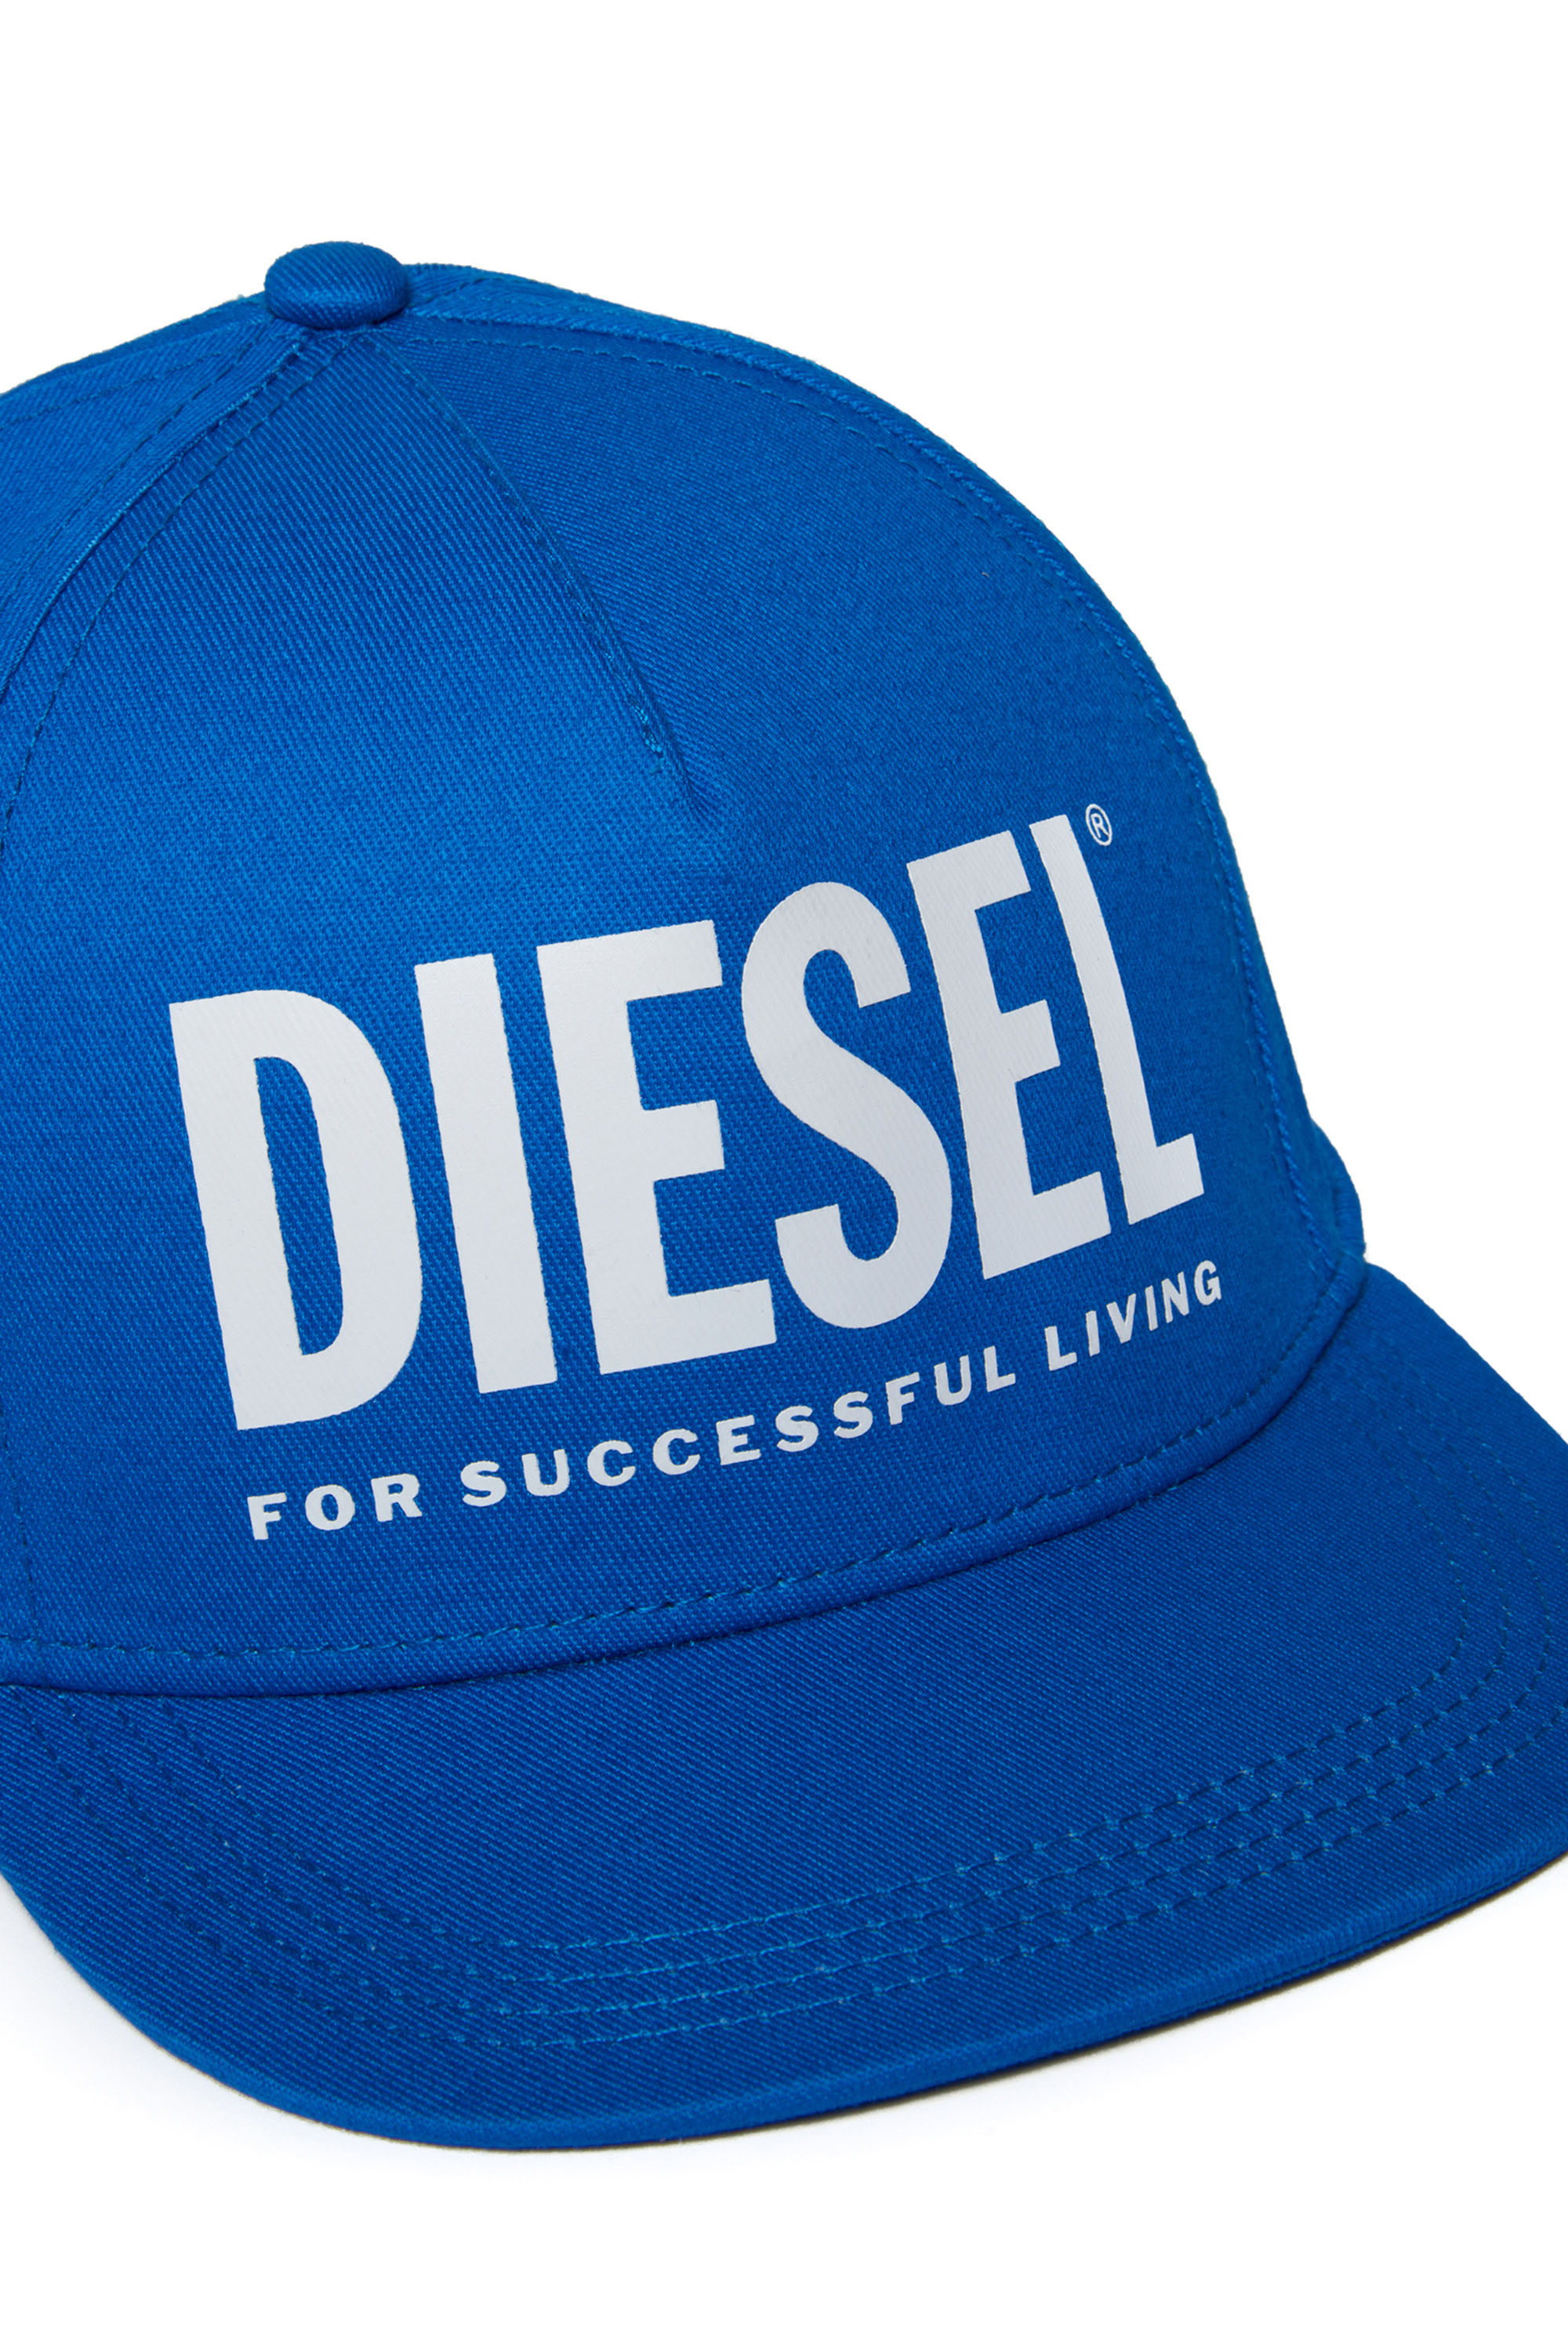 Diesel - FOLLY, Blu - Image 3